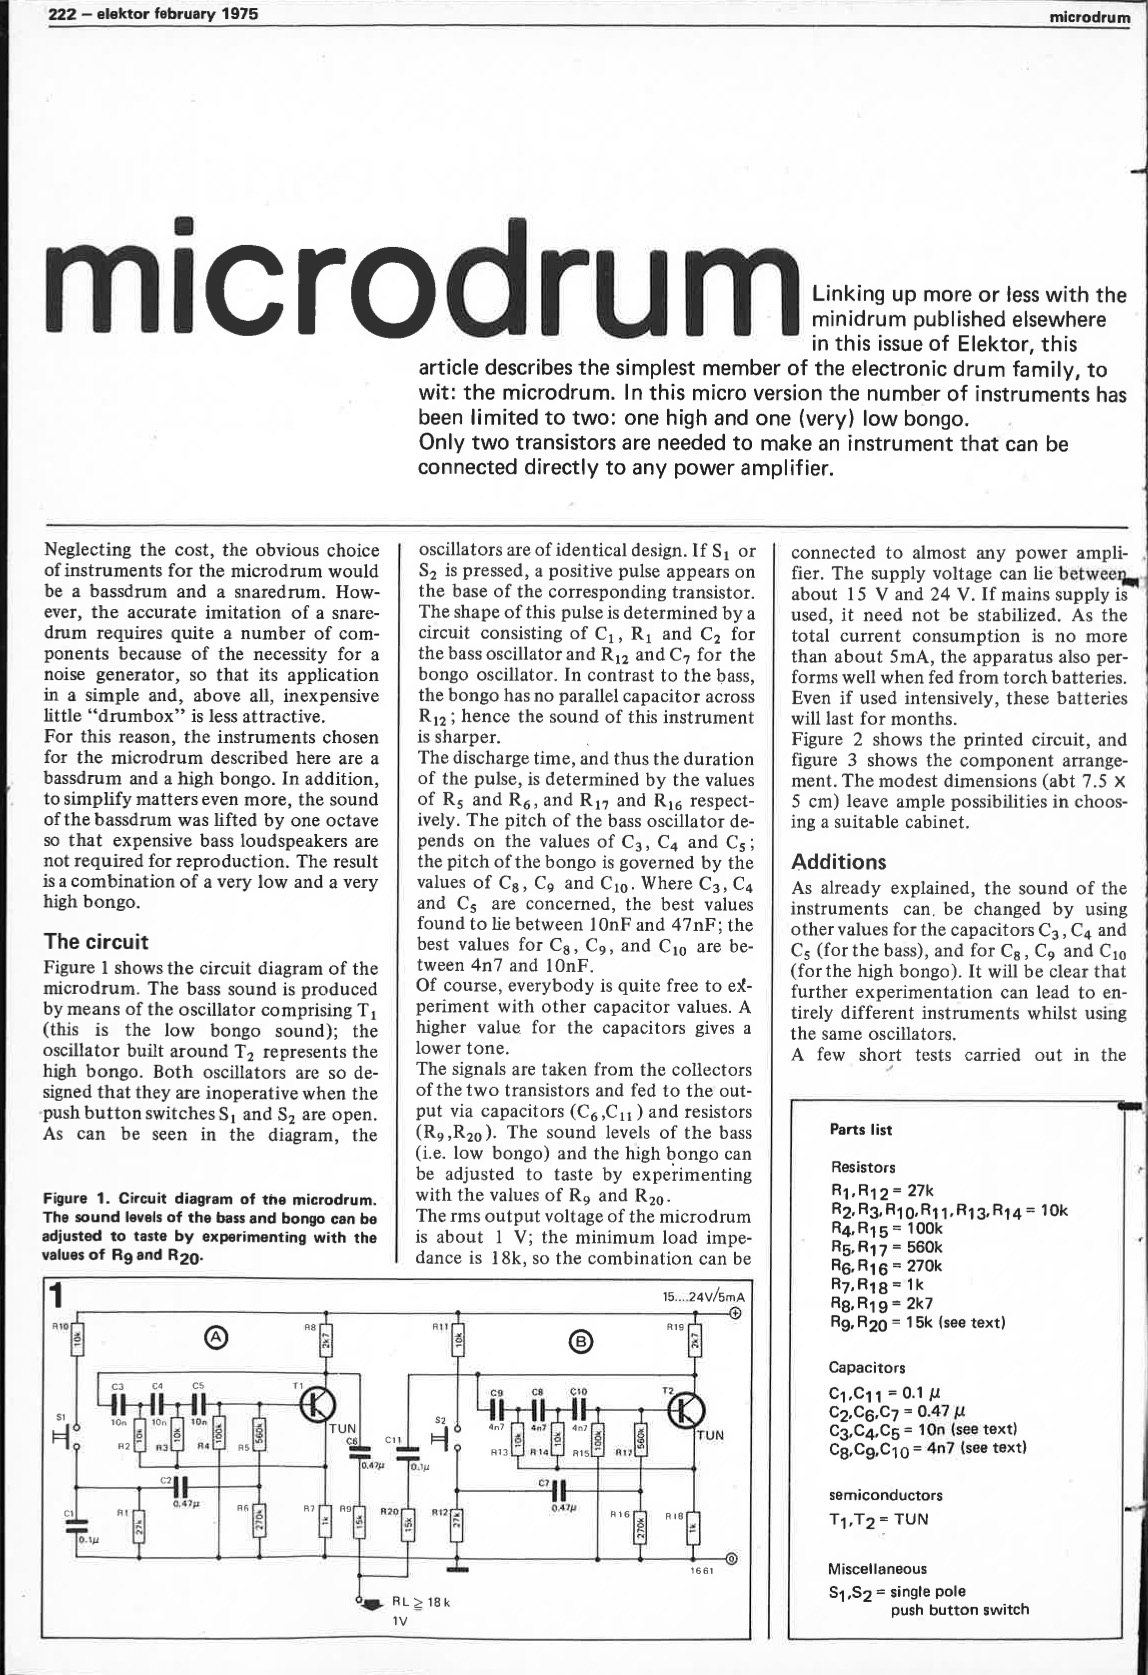 microdrum